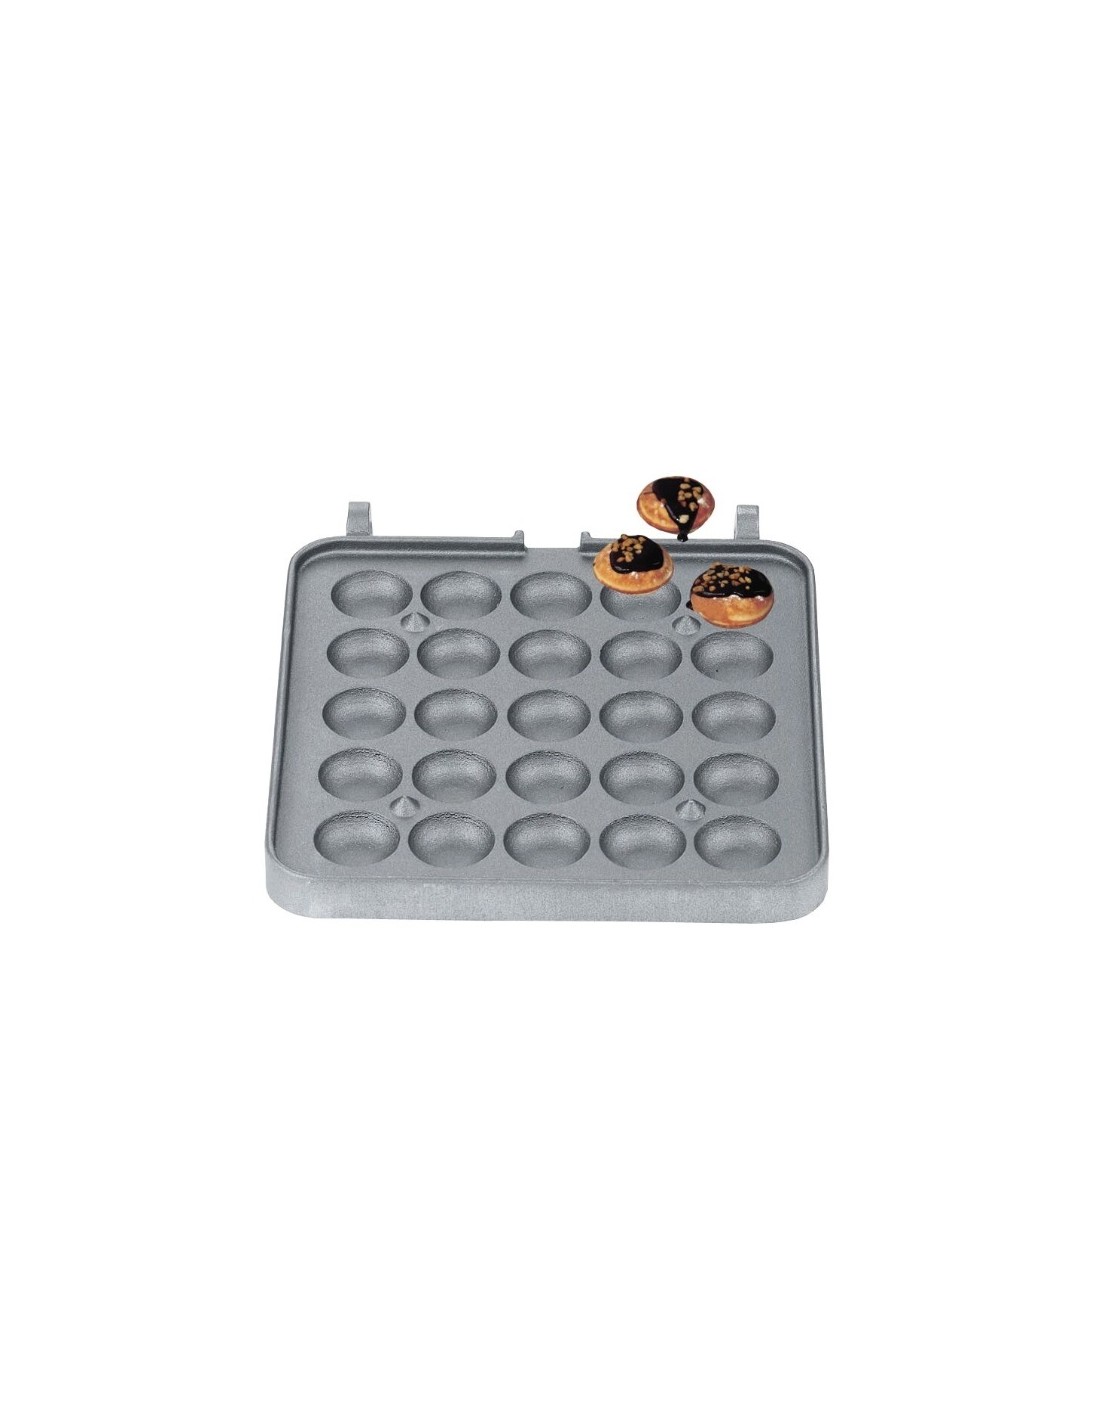 Placa intercambiable de waffel - forma: 25 waffles de bola Ø 4 cm - hecho de aluminio teflonado no-adherente